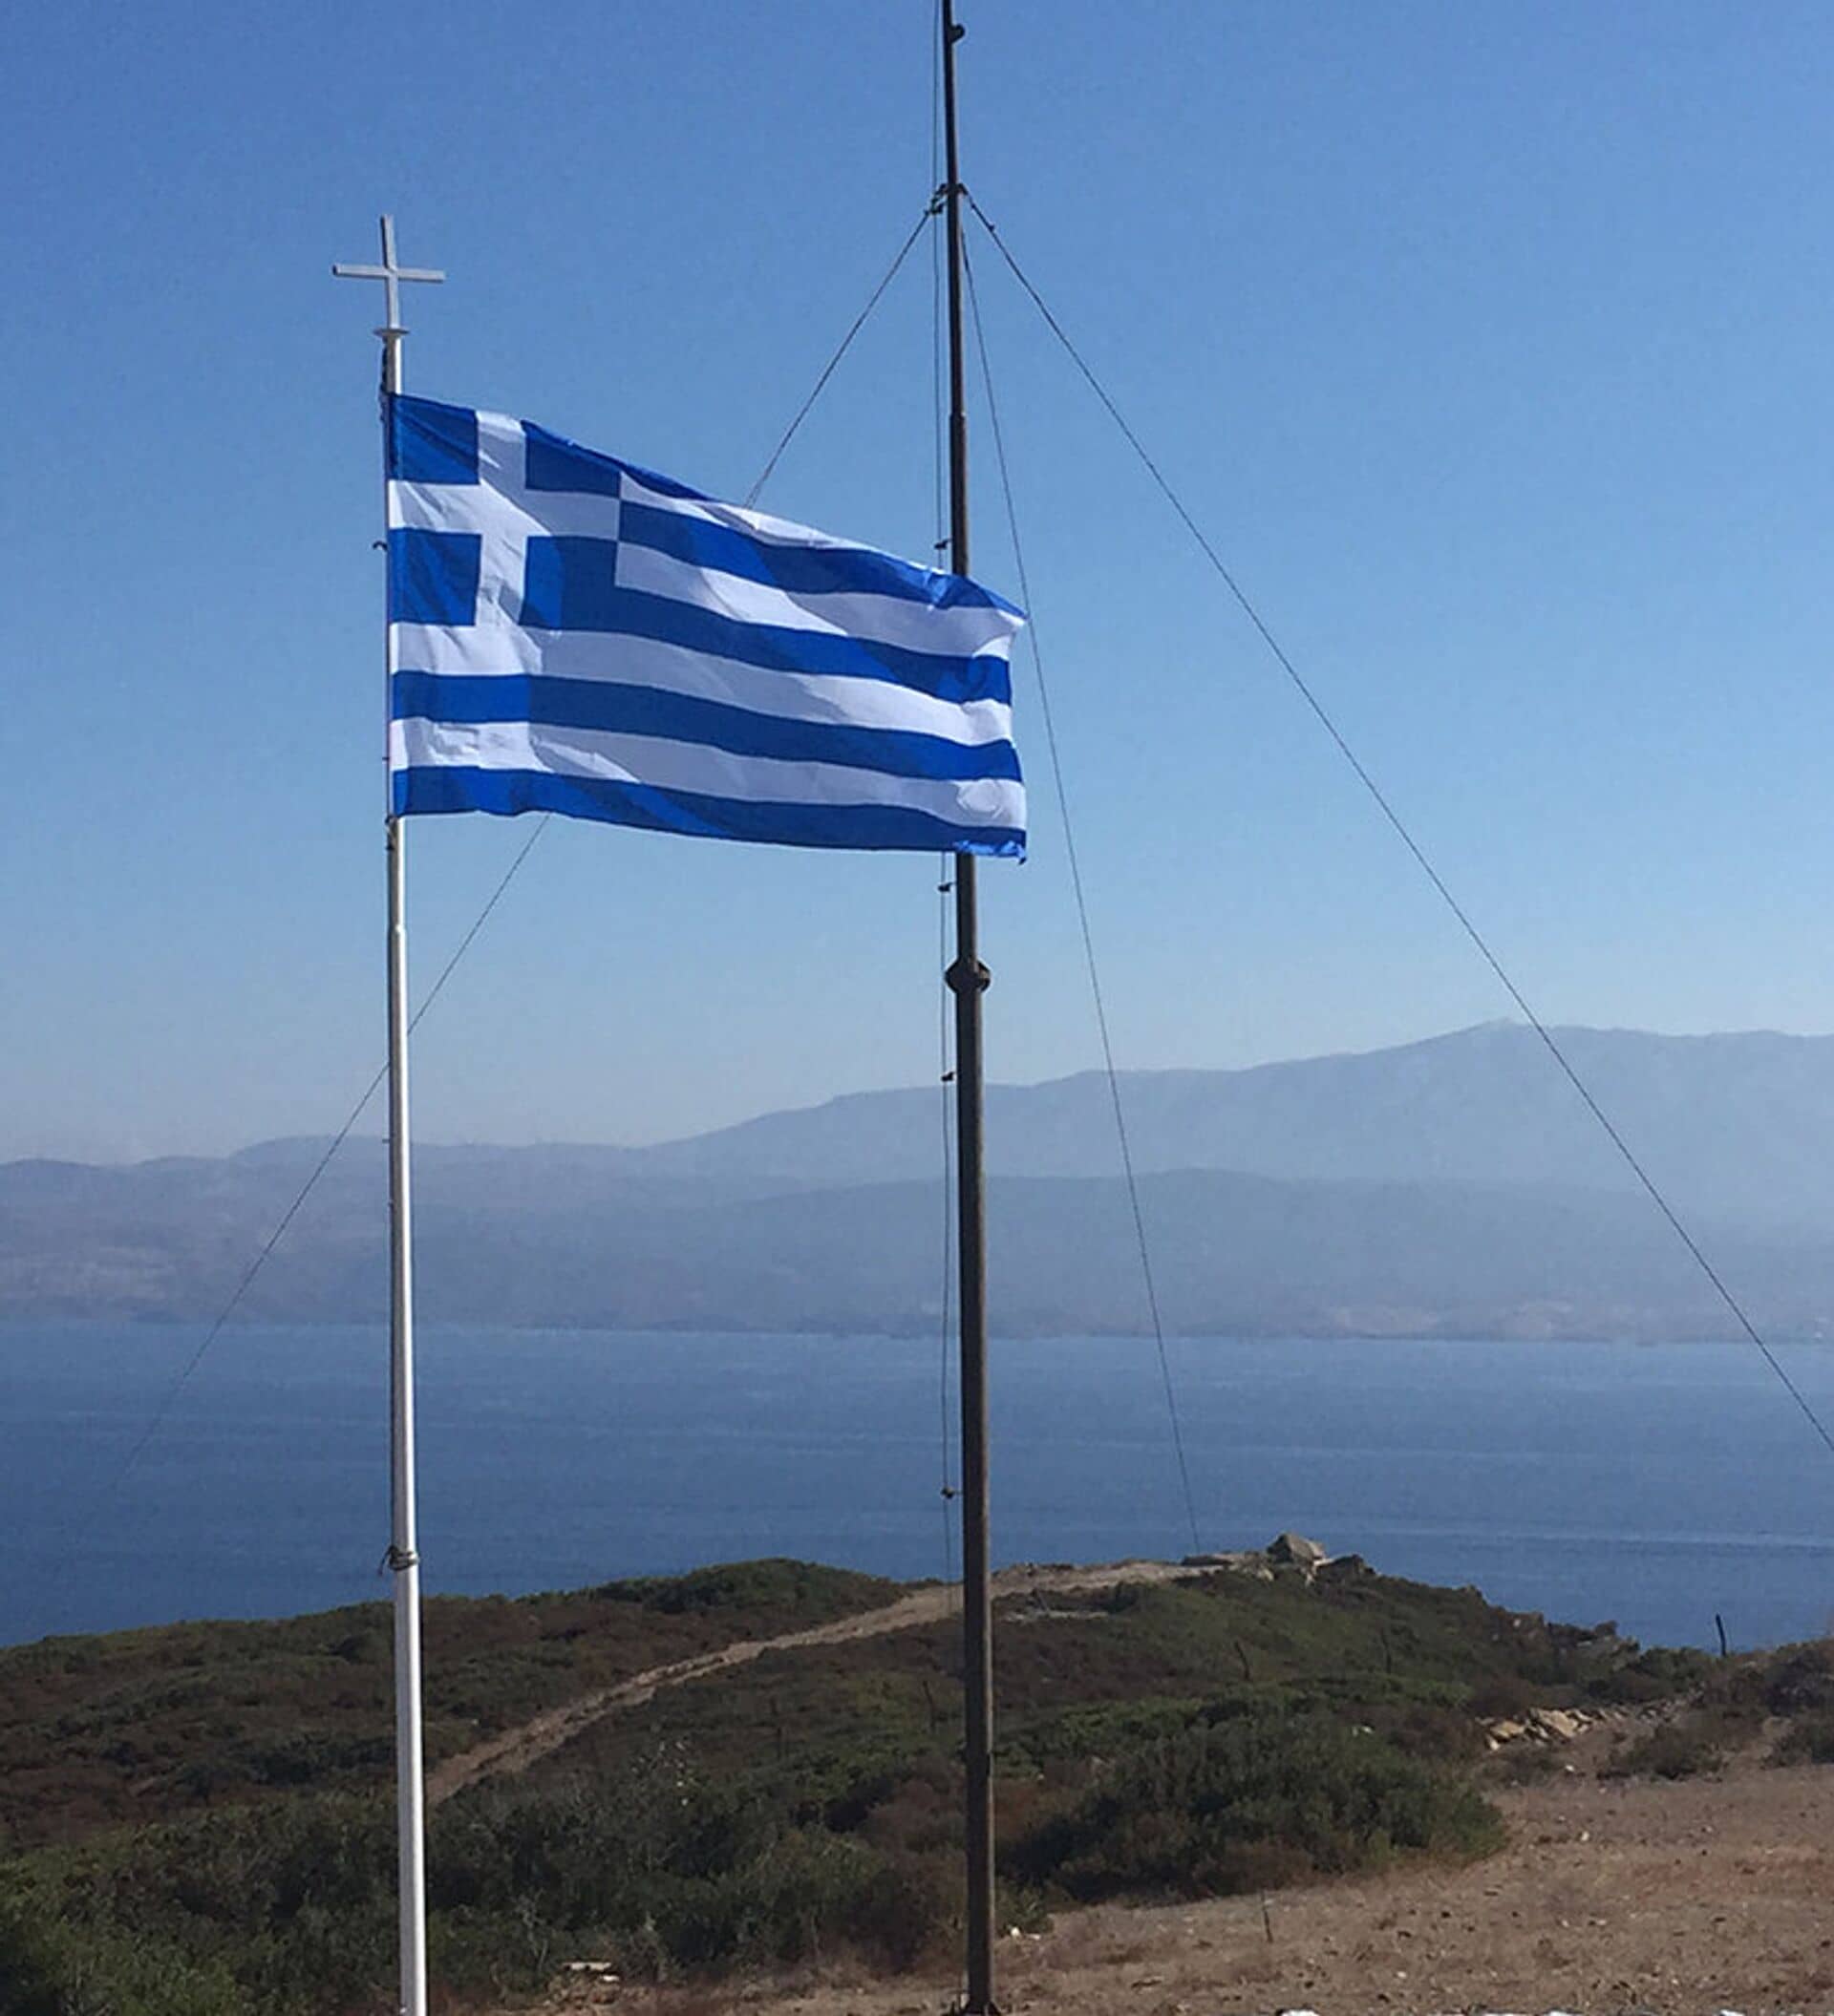 Yunanistan'ın 12 mil adımı tam zamanı diyerek duyurdular